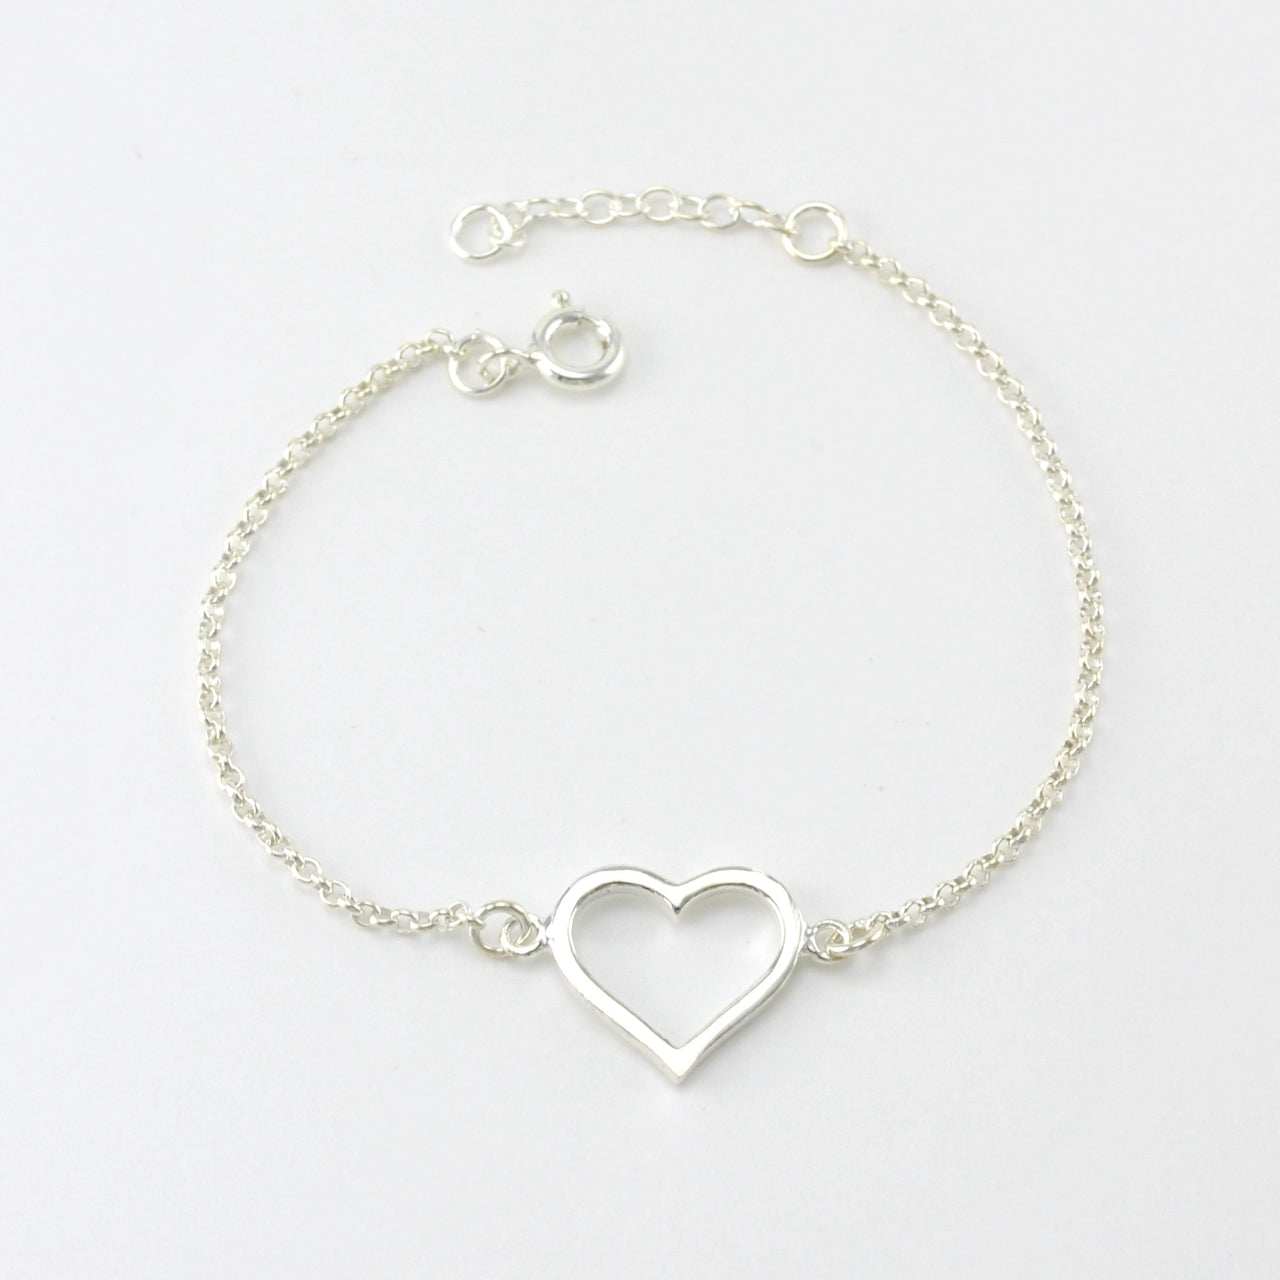 Sterling Silver Open Heart Link Bracelet